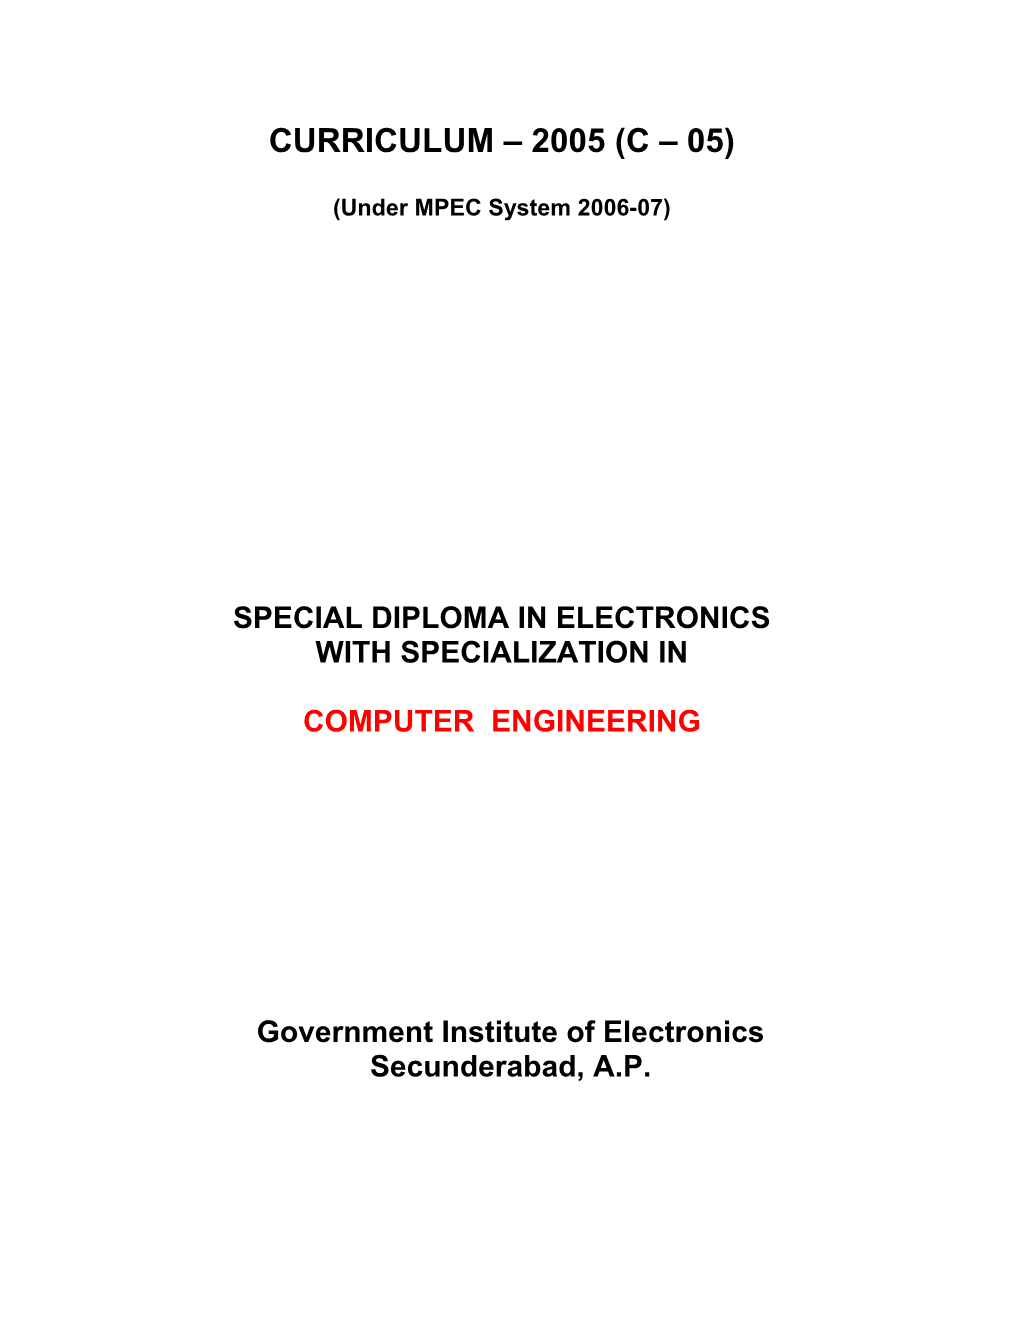 Under MPEC System 2006-07